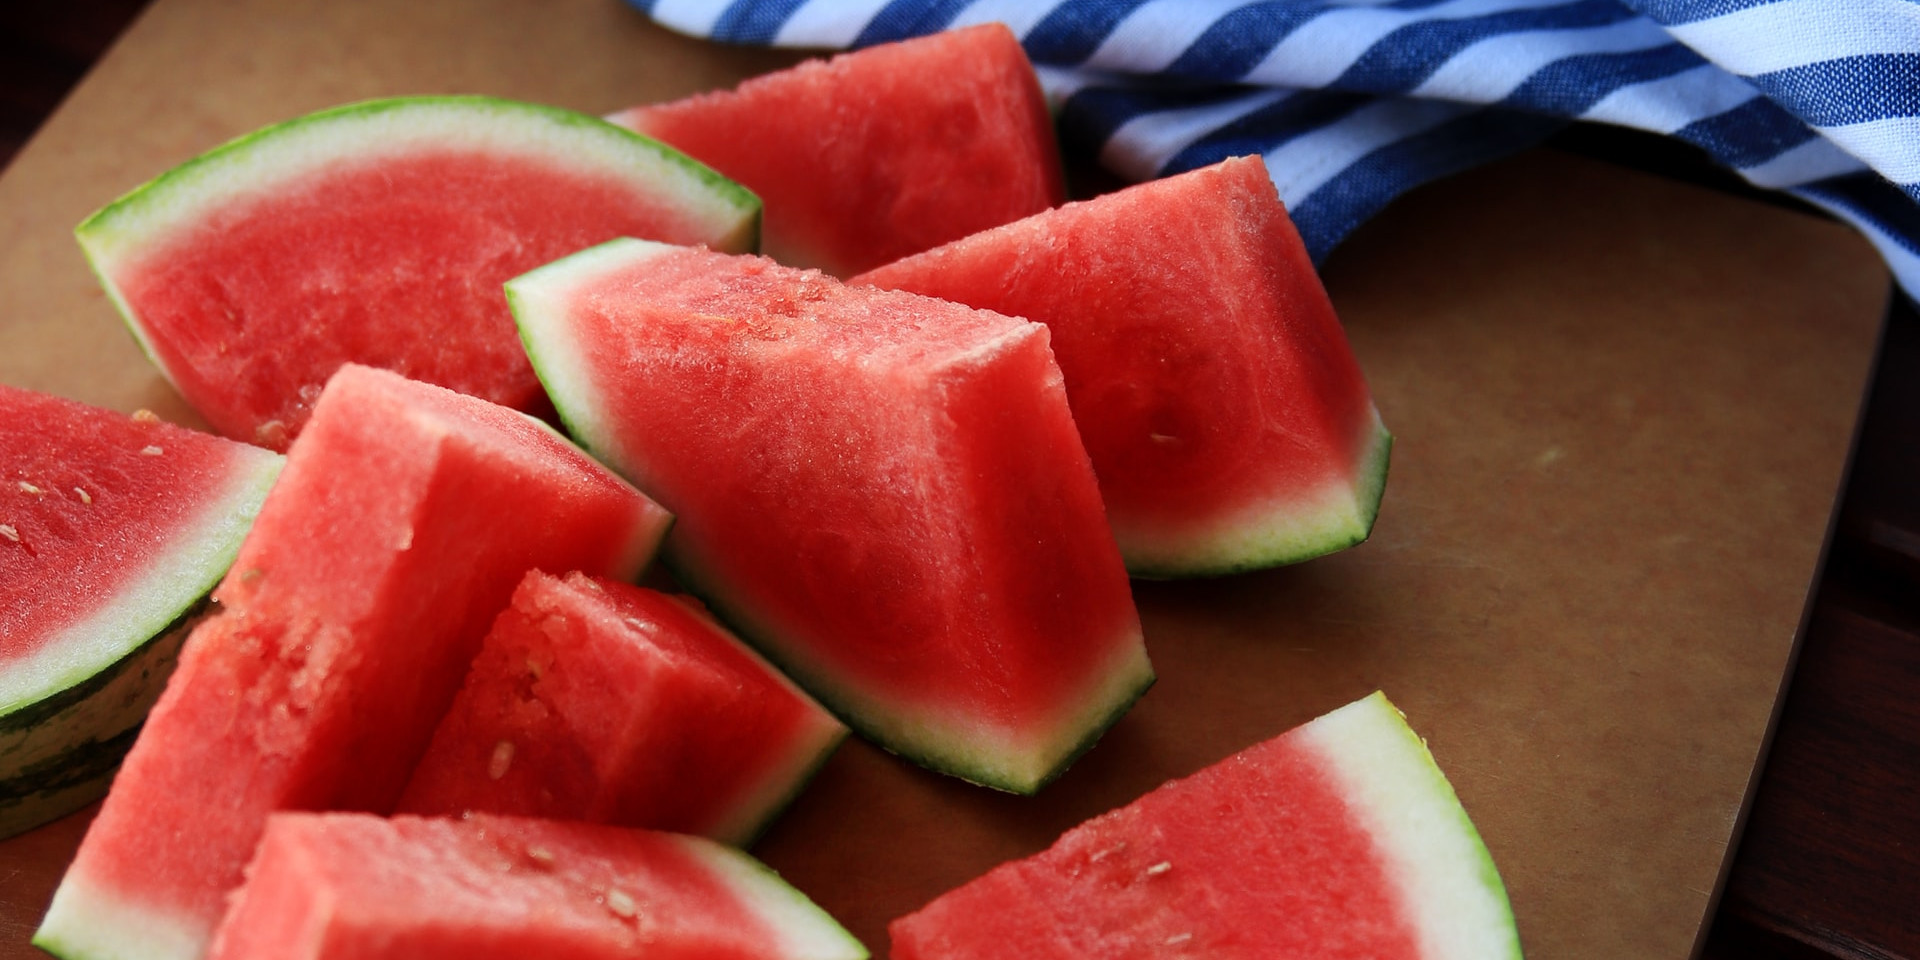 Pengaruh dan efek mengonsumsi buah semangka bagi atlet